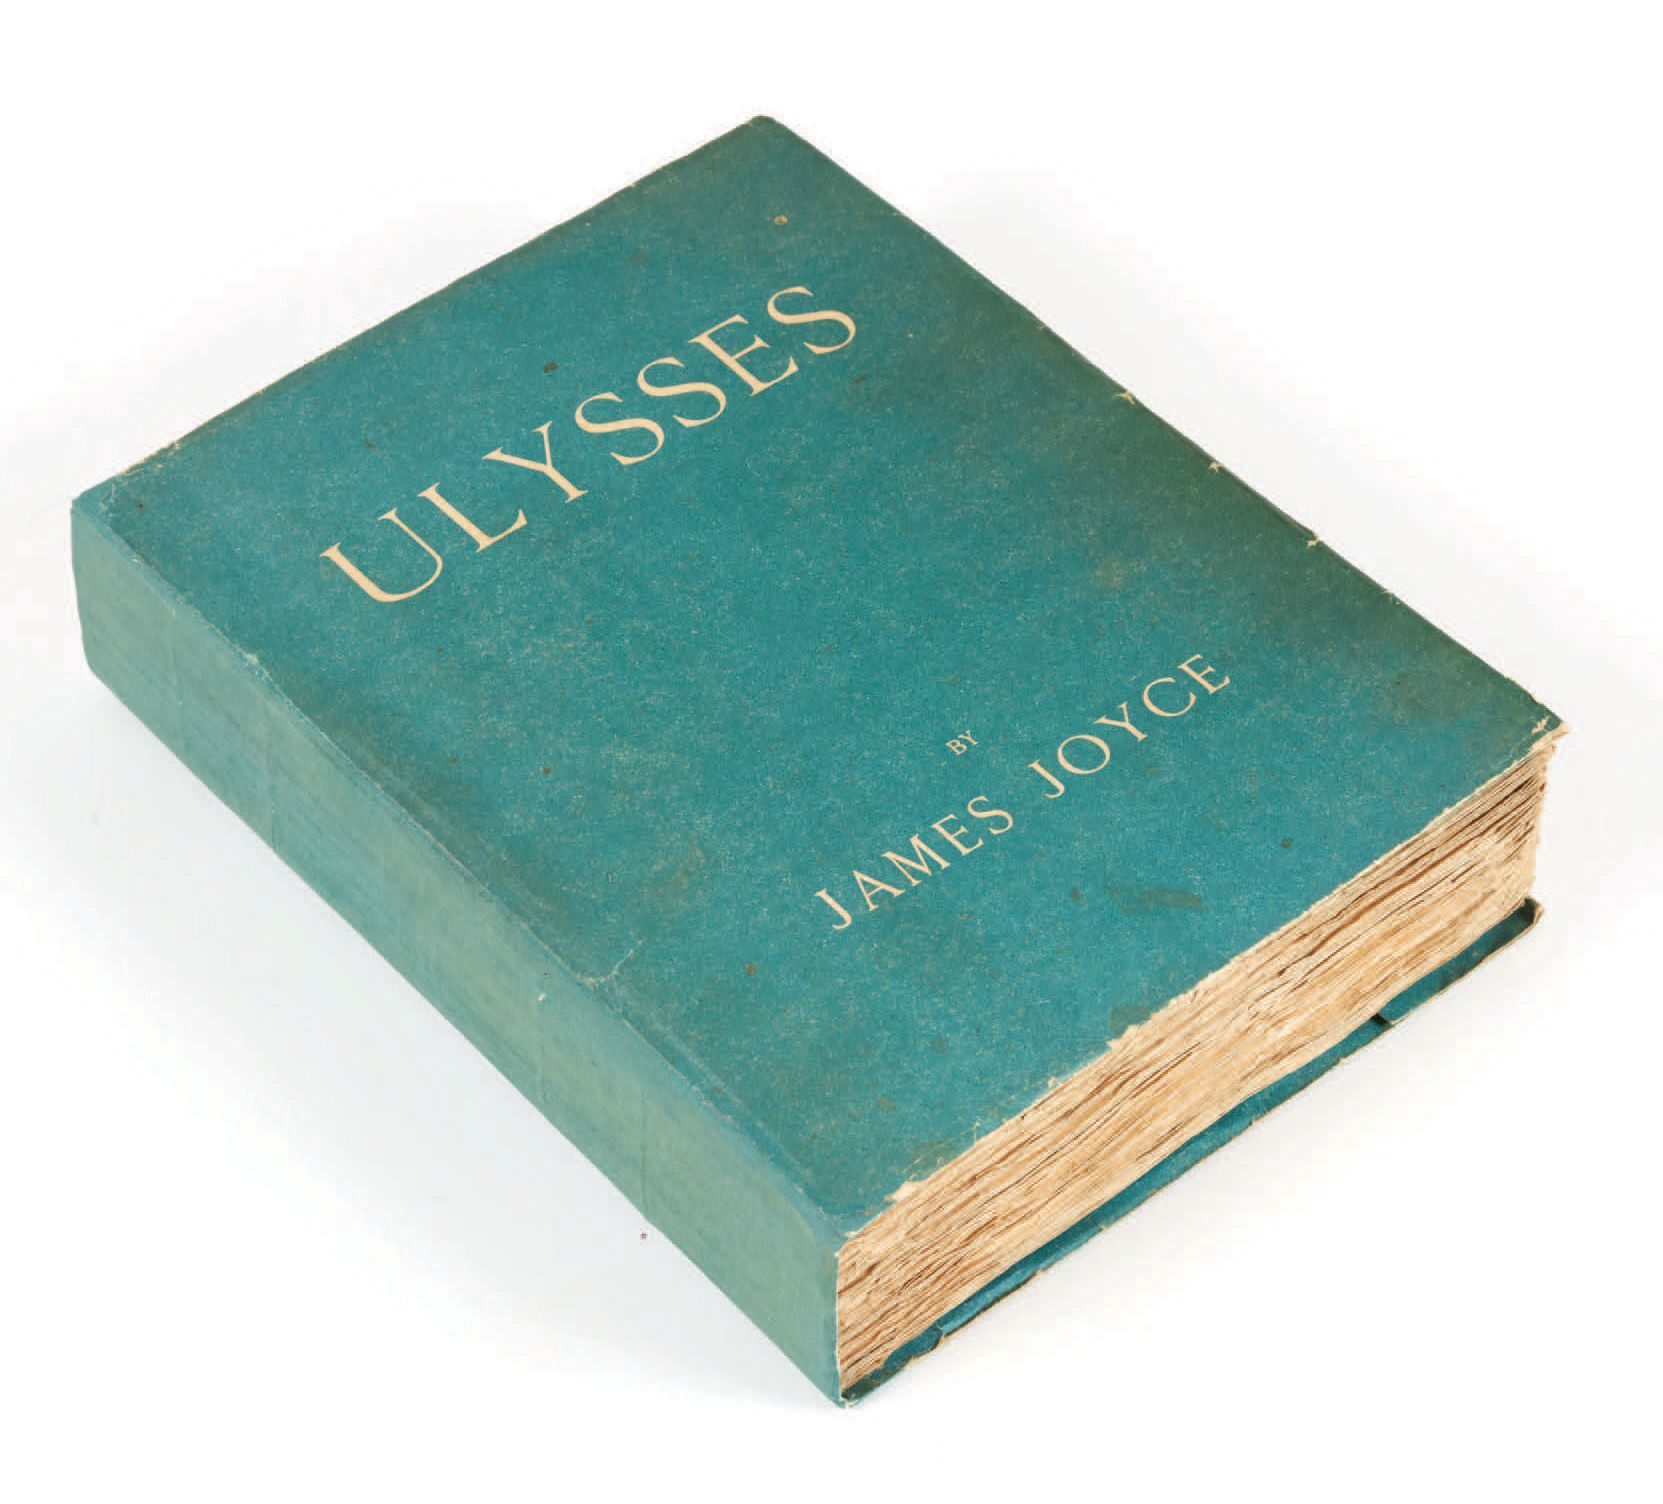 James JOYCE. 尤利西斯巴黎，约翰-罗德克为利己主义出版社出版，1922年。
In-4，平装本，蓝色纸质封面，现代滑套。
英文第二版，在巴黎出版：封面&hellip;